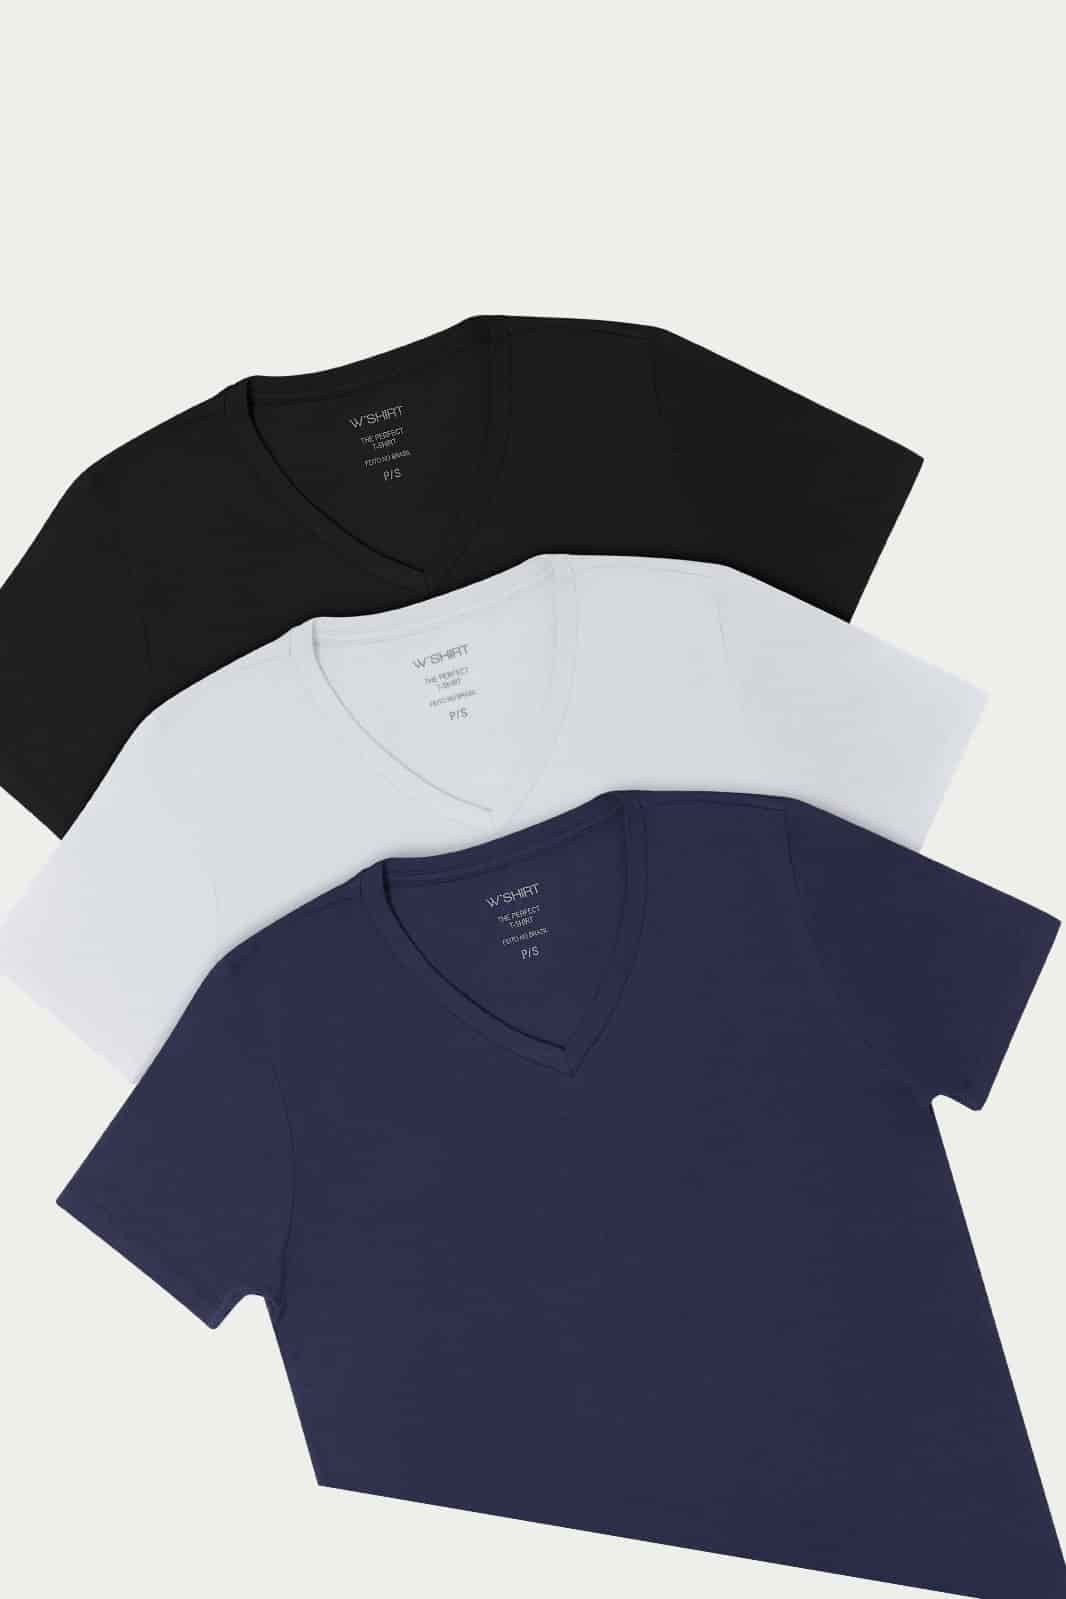 Kit 1 - Camiseta Básica Algodão Premium Gola V 3 cores